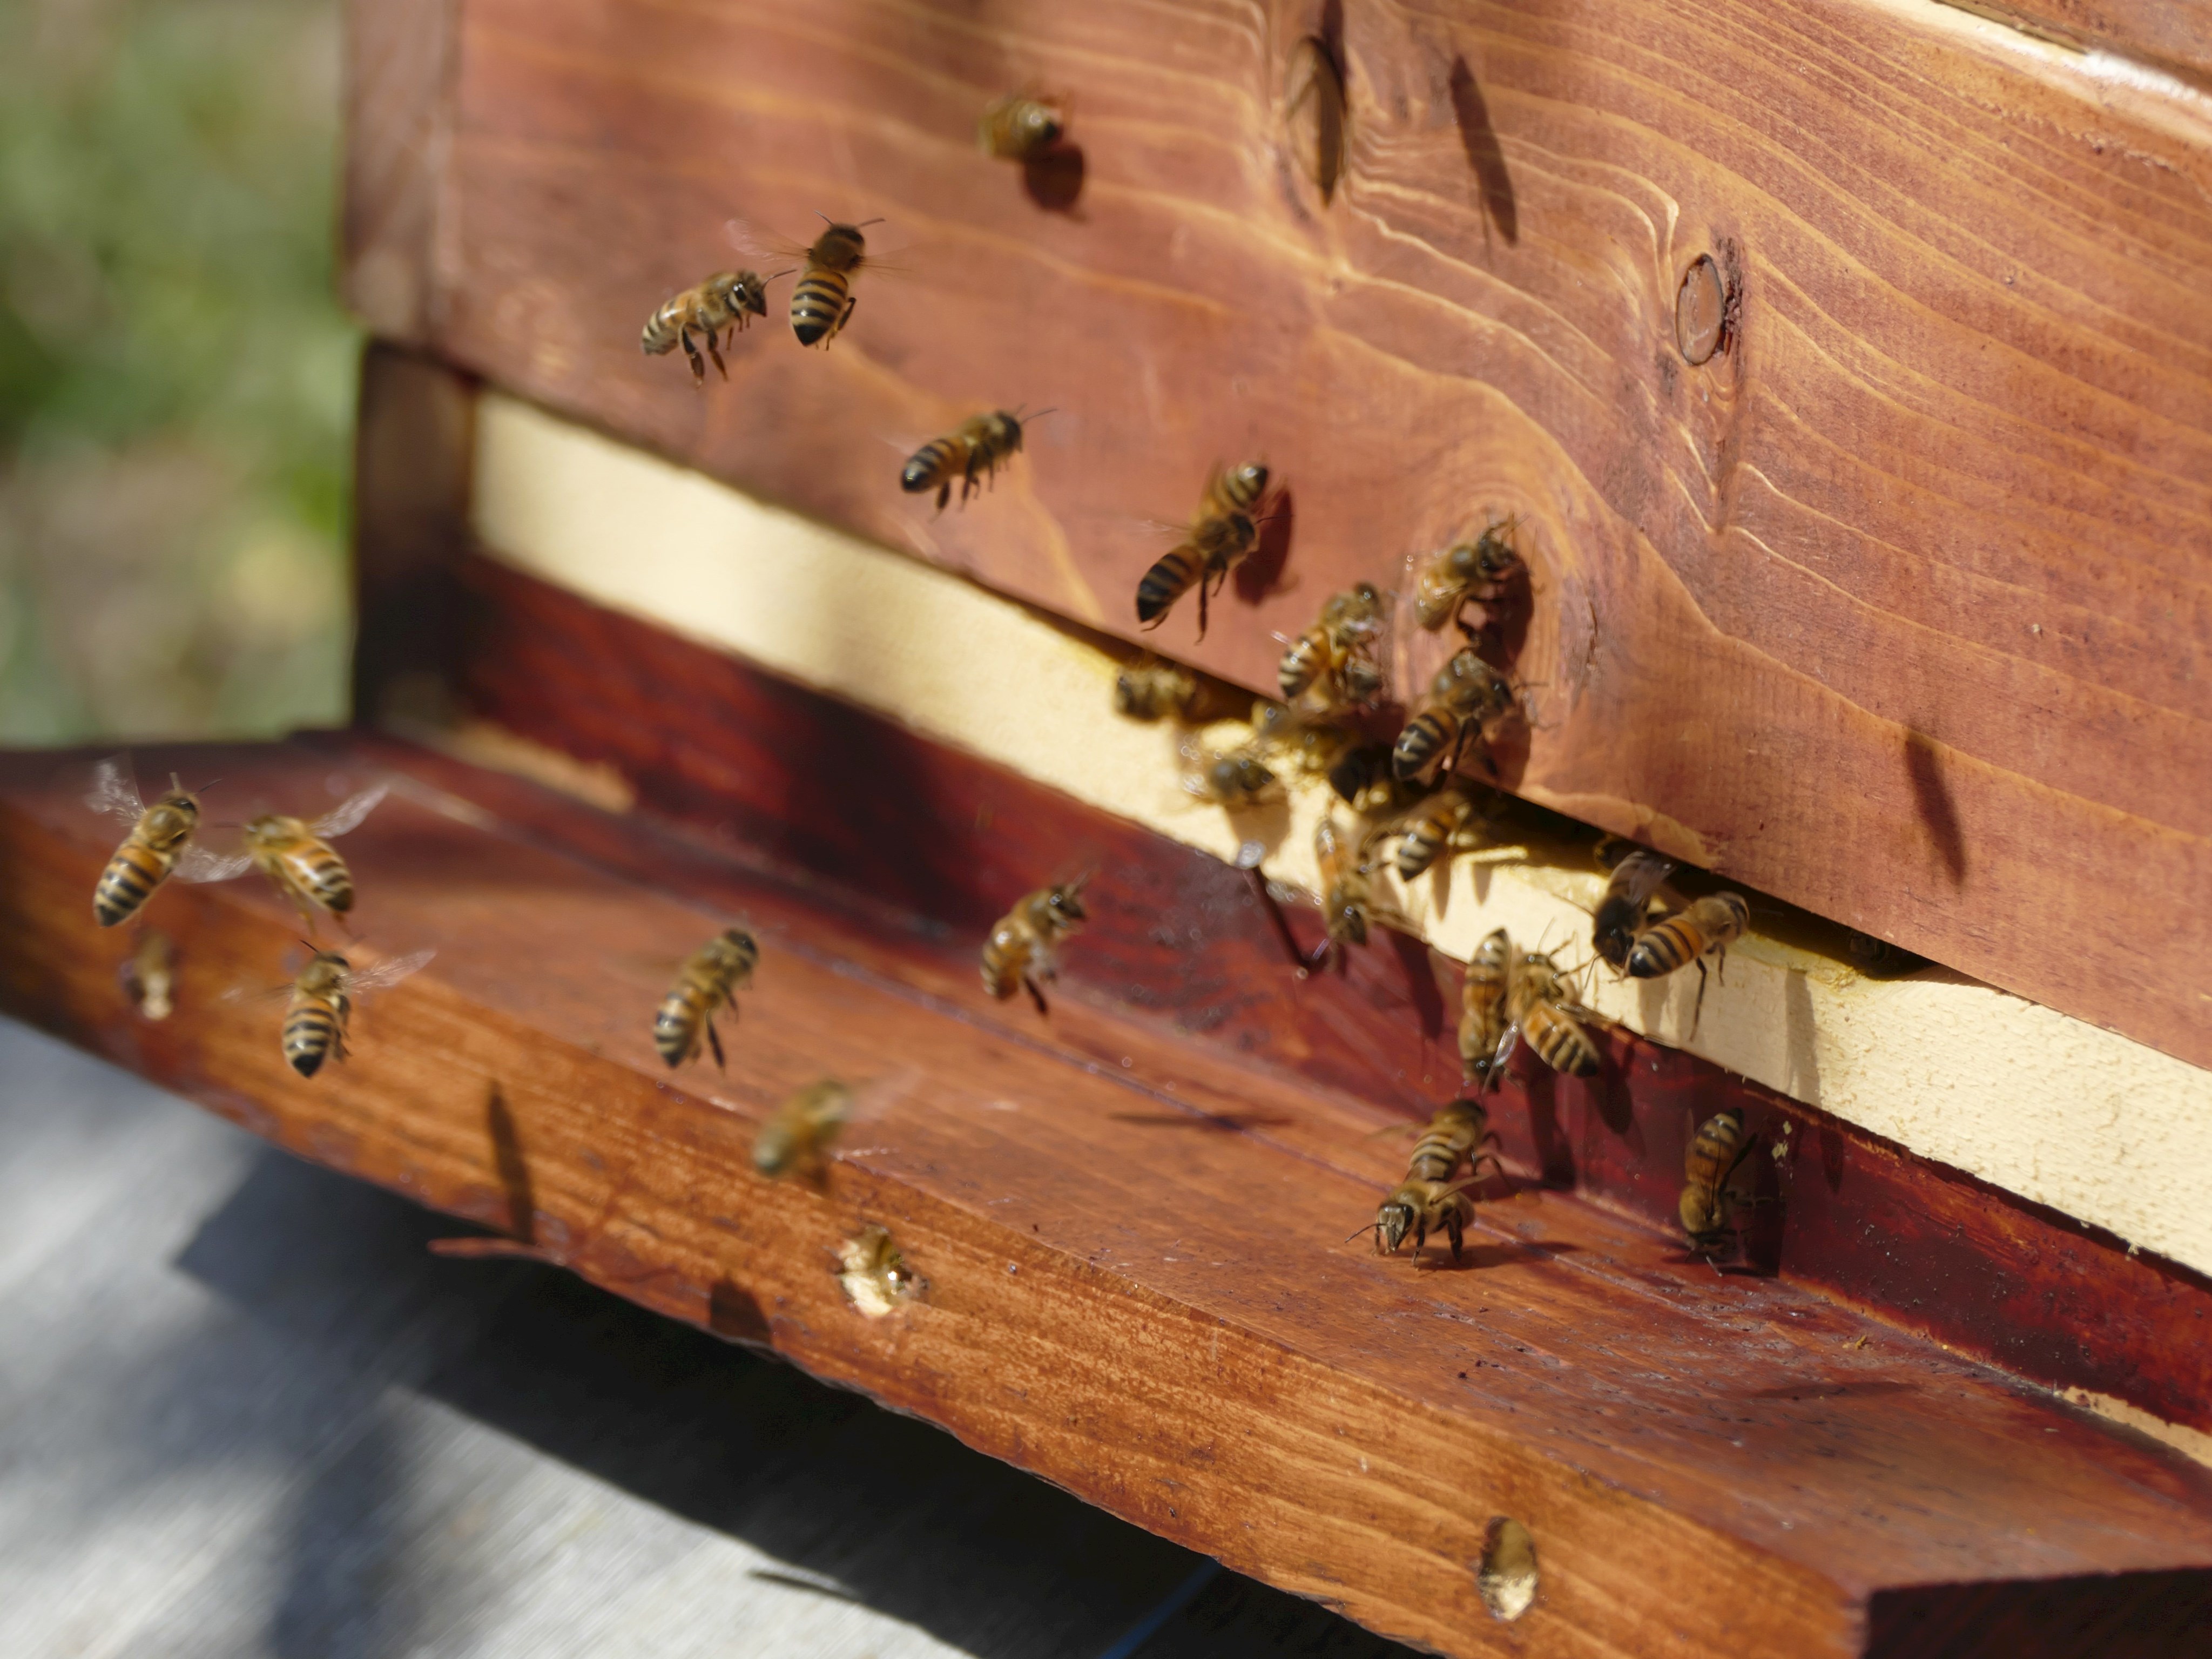 Die Honigmacher: Bienen und Imker, öffentliche Führung im Museum KulturLand Ries